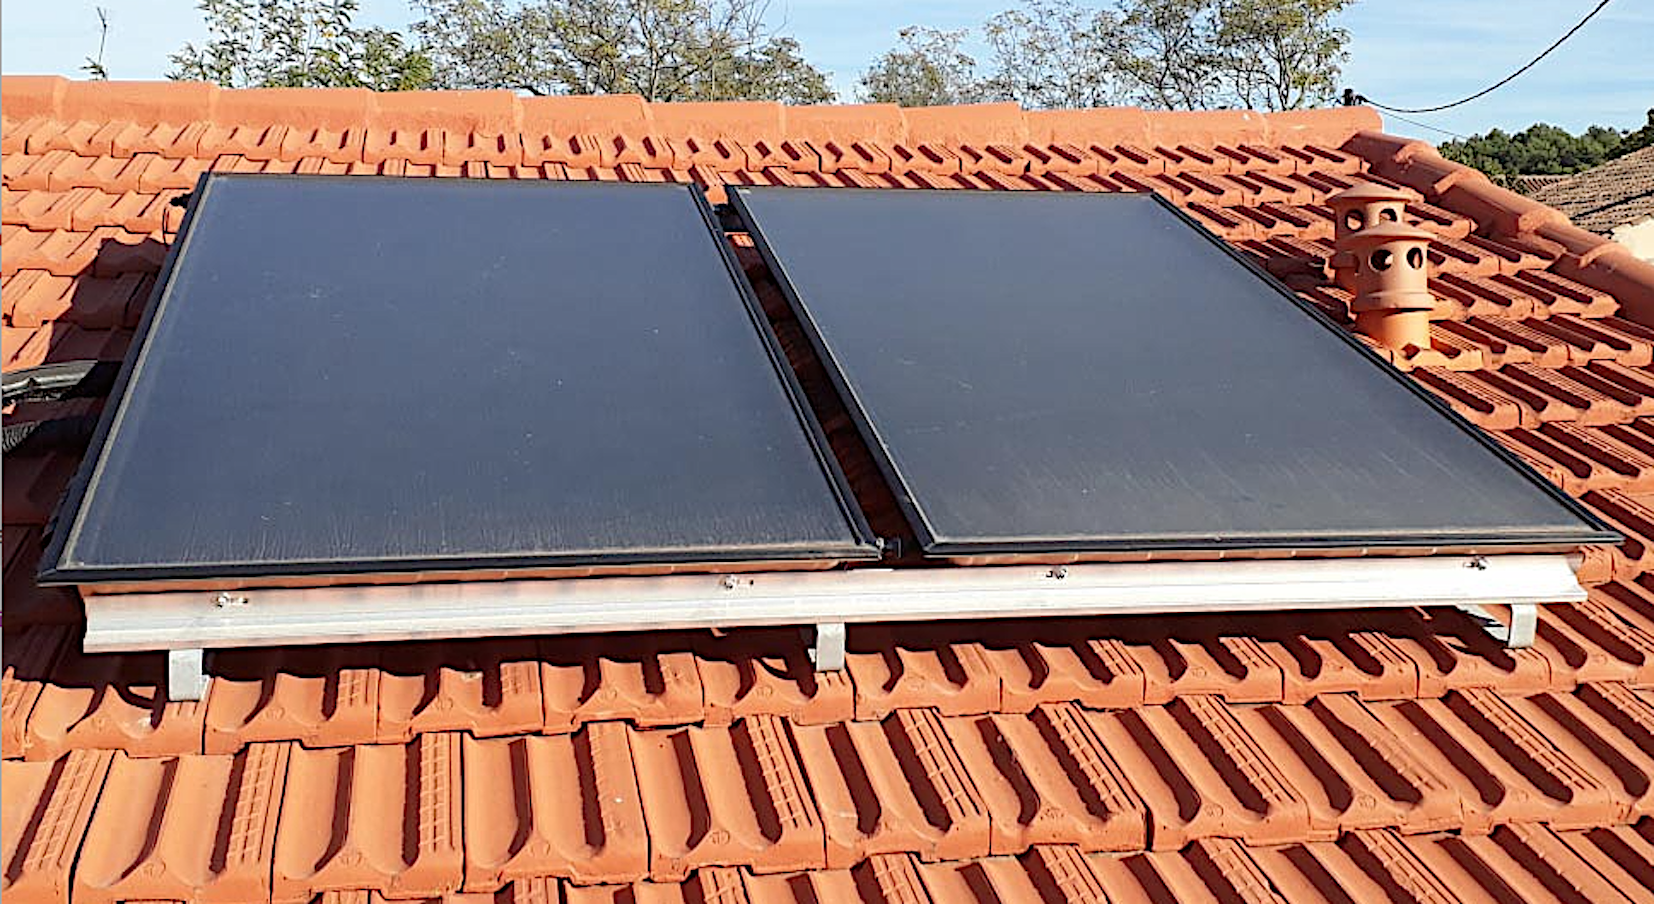 Découvrez comment installer des panneaux solaires thermiques © Soleil vert